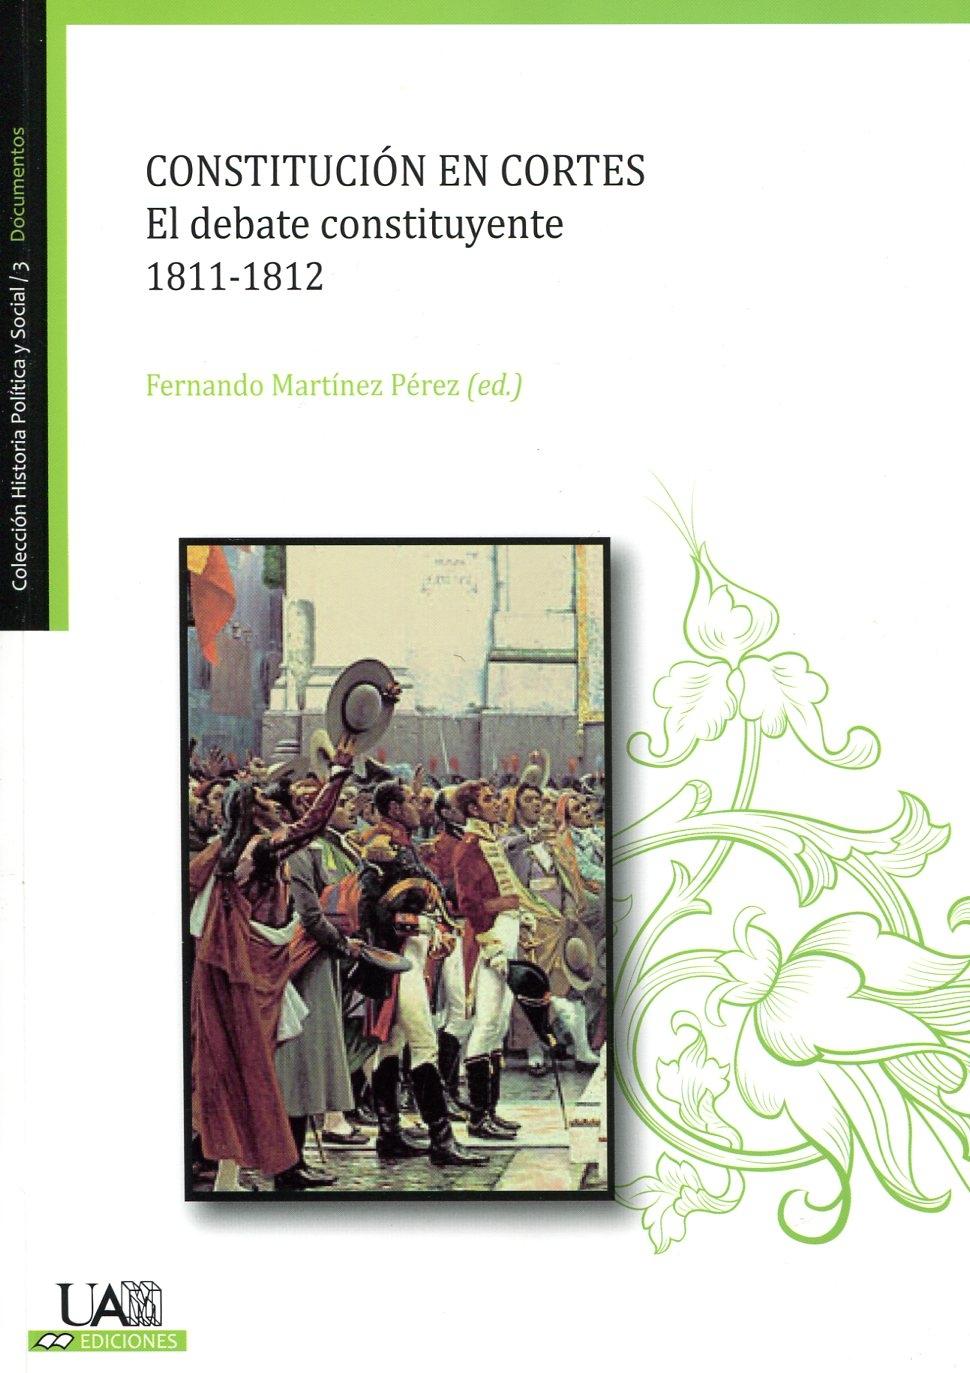 Constitución en cortes, 1811-1812 "el debate constituyente". 